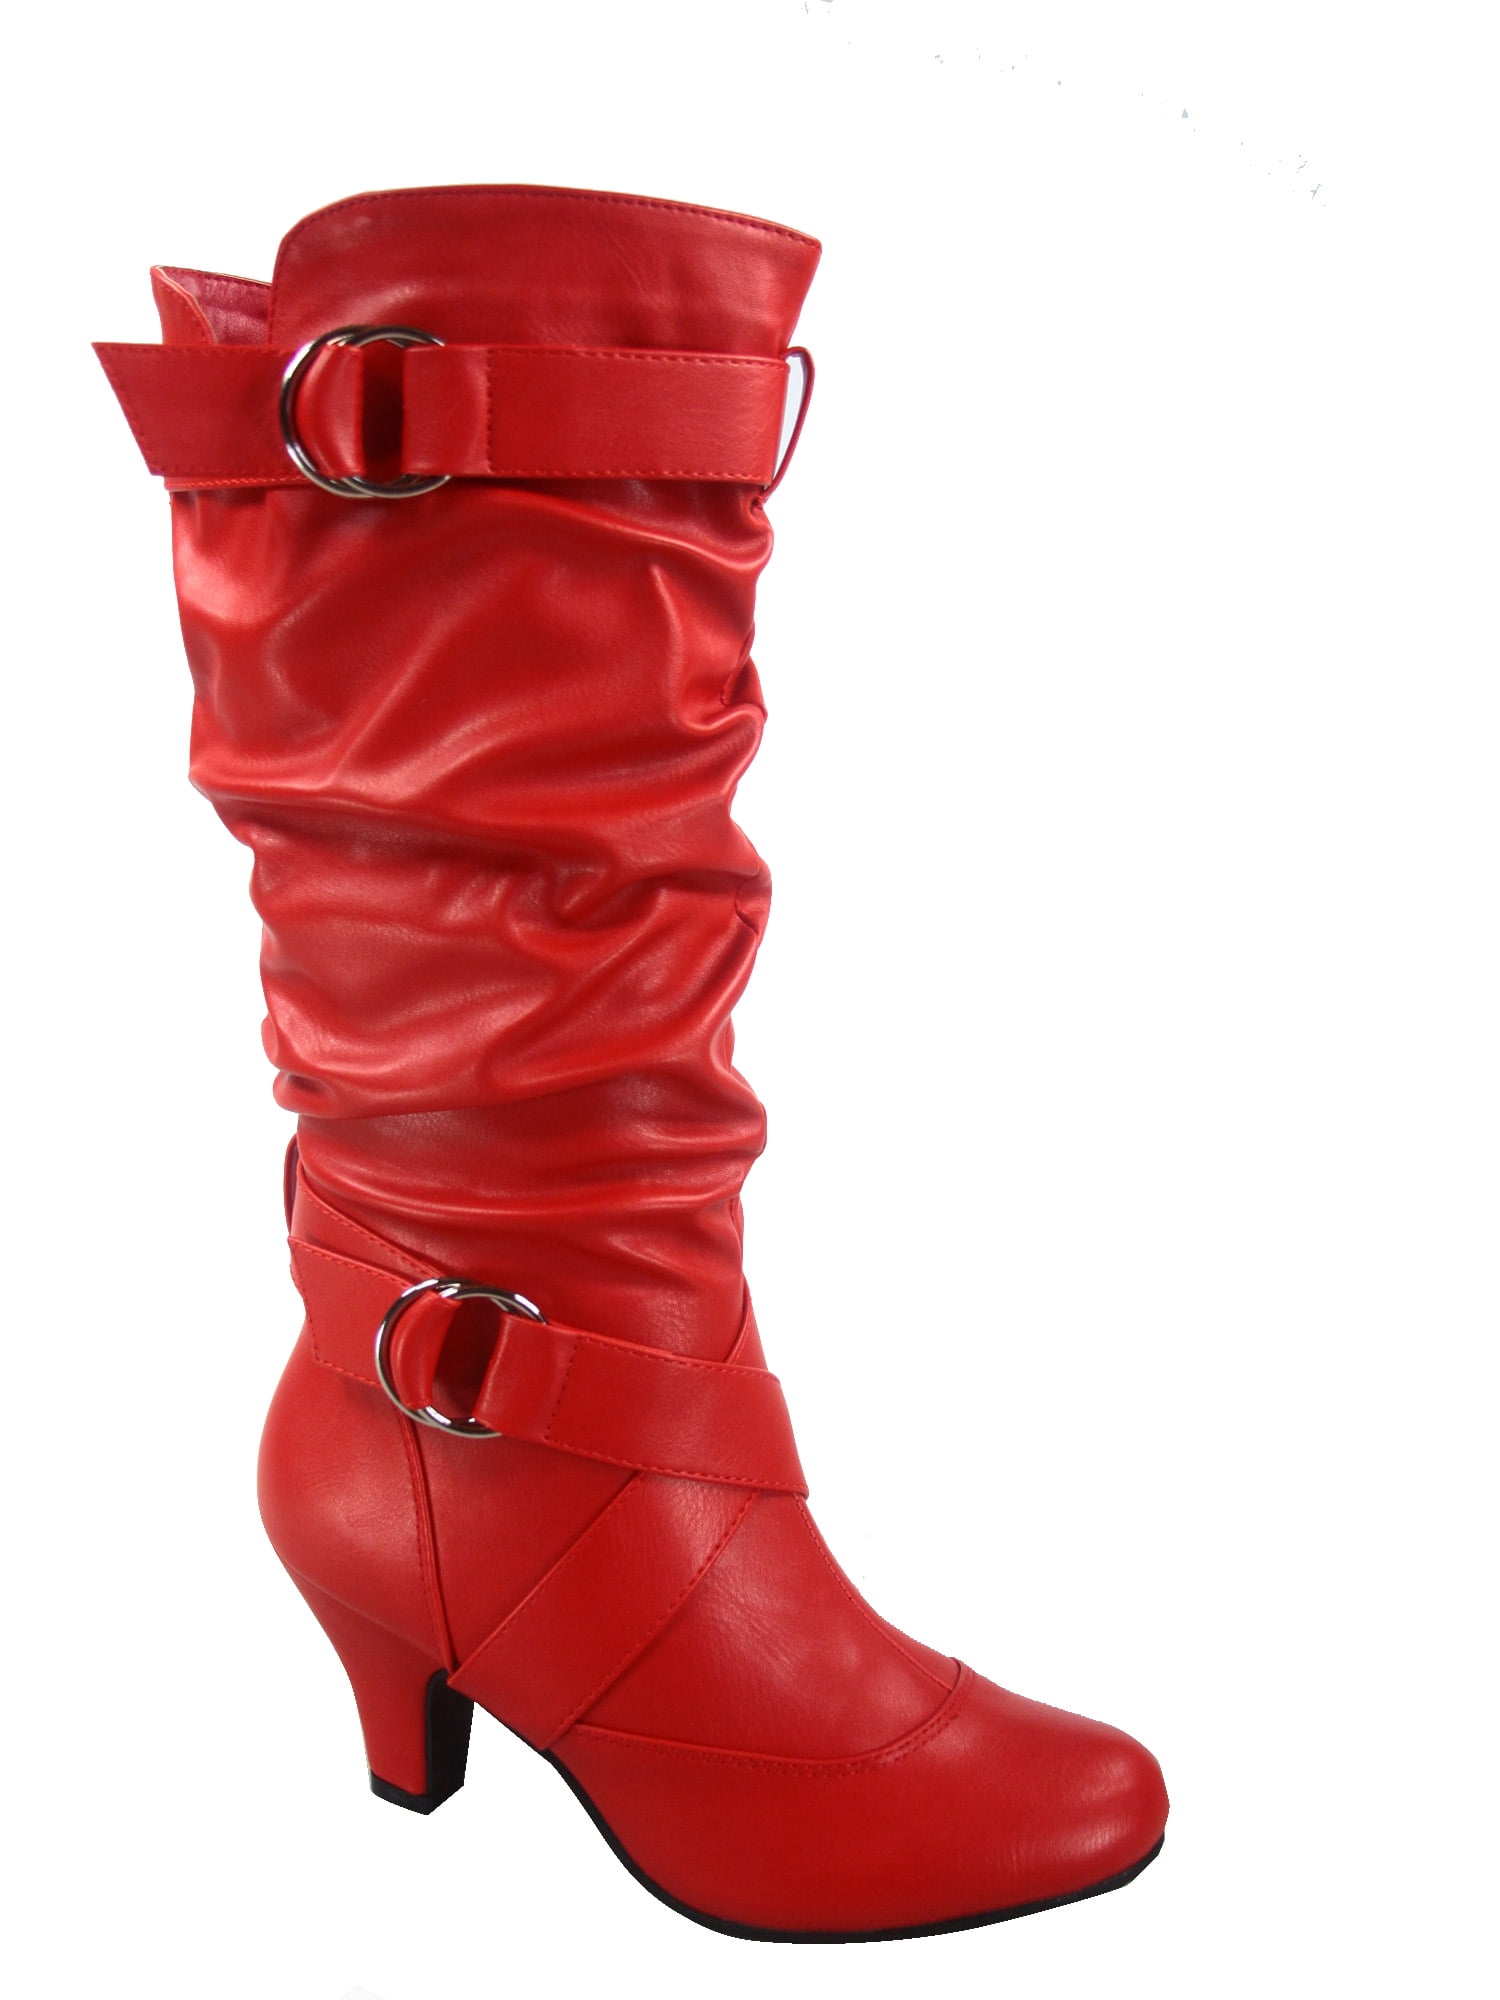 New Women's Fashion Dress High Heel Zipper Mid Calf Knee High Boots Size 6-11